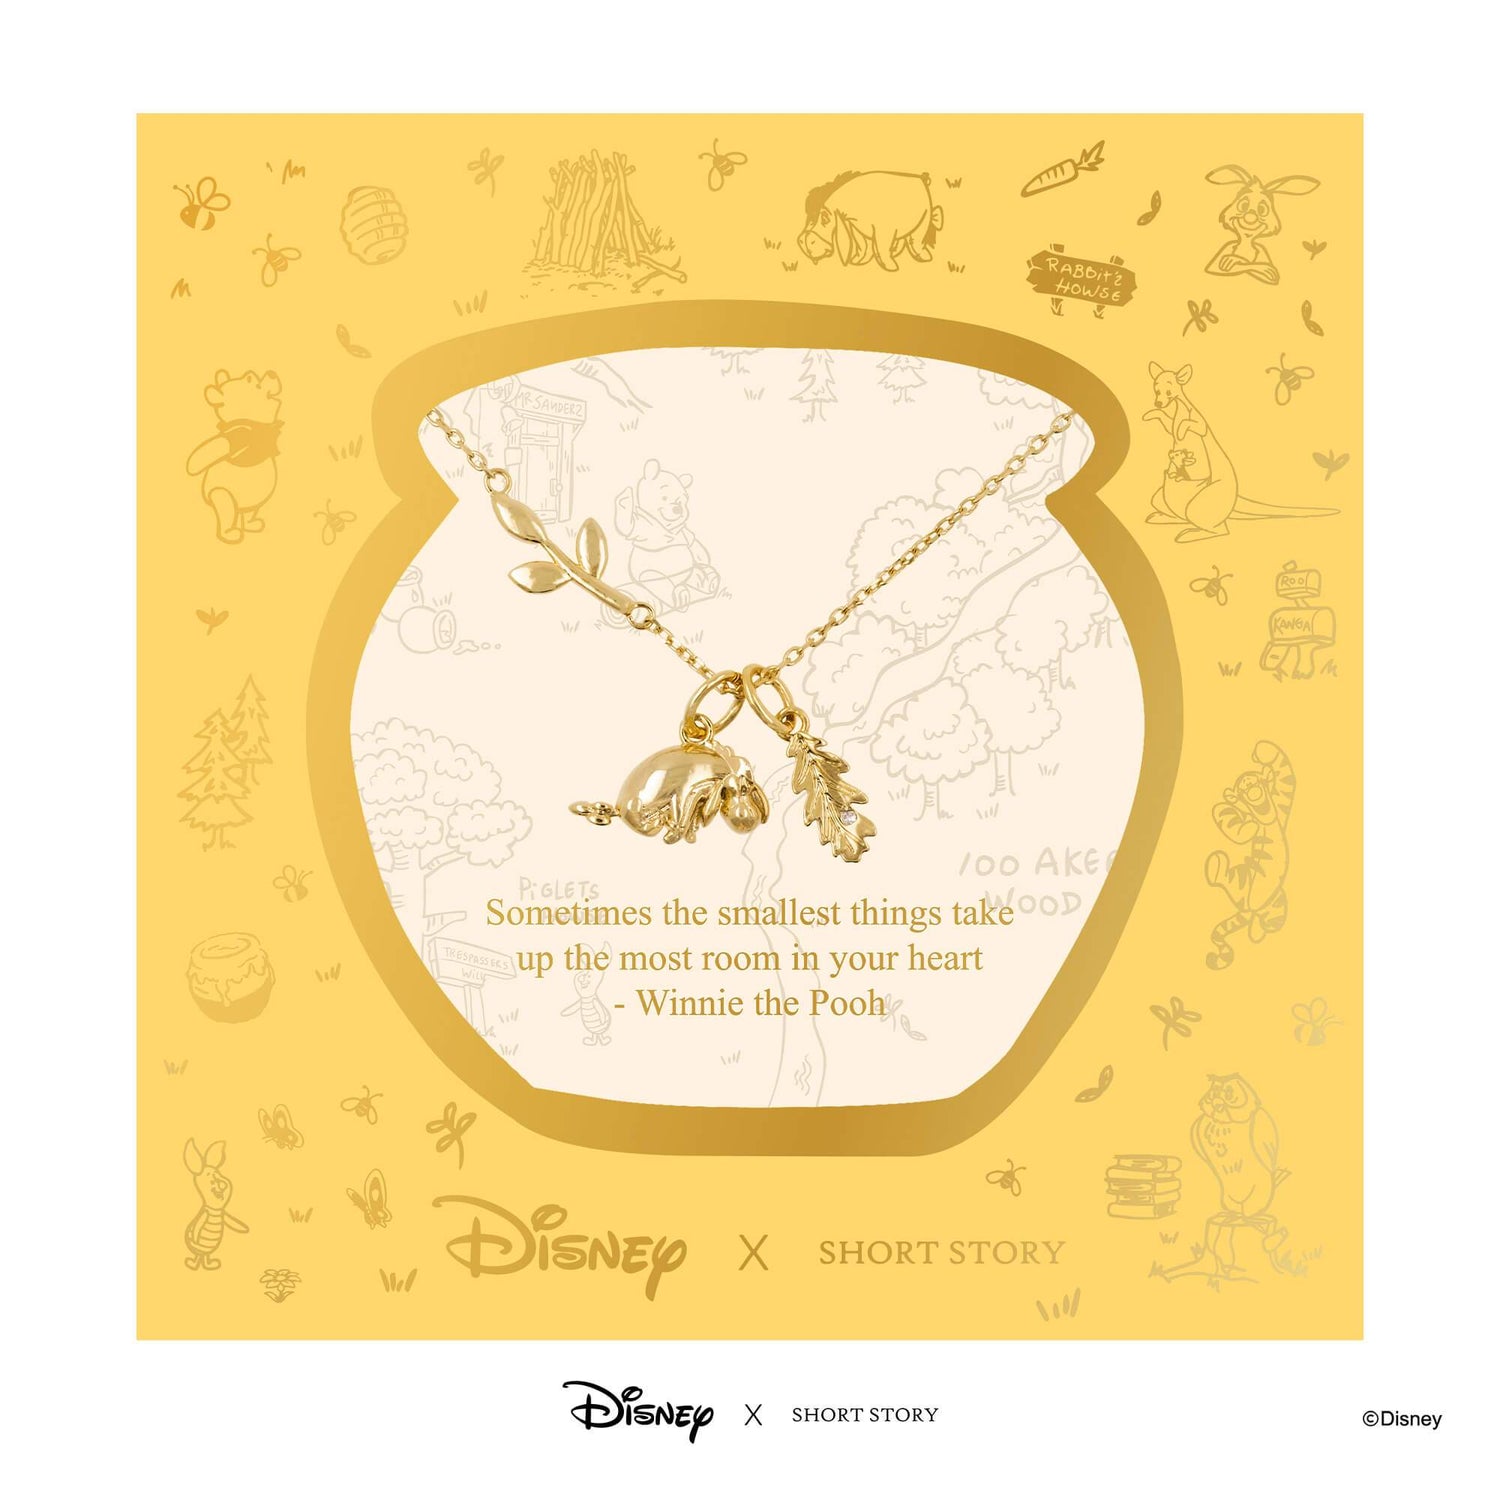 Disney Necklace Eeyore